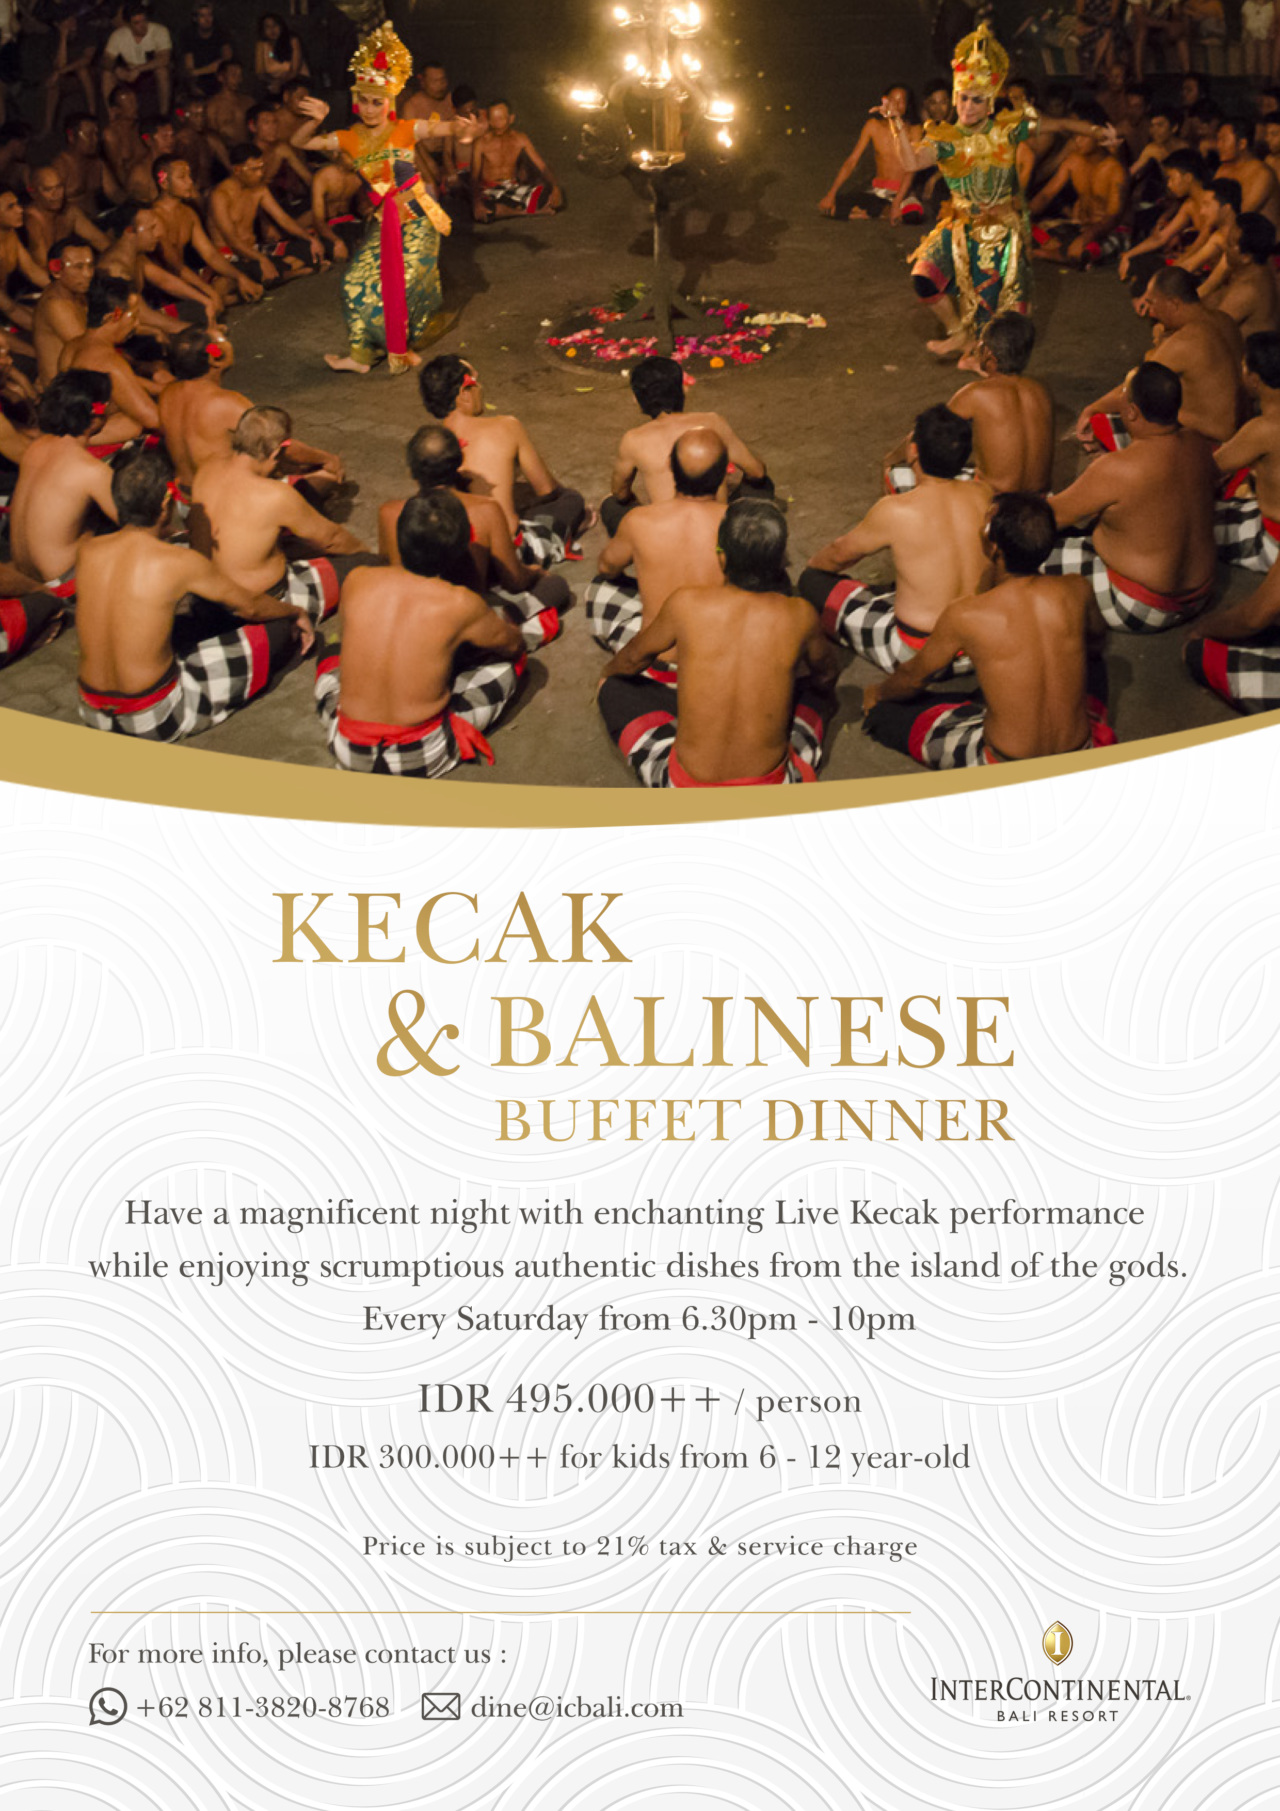 Kecak-_-Balinese-Buffet-Dinner